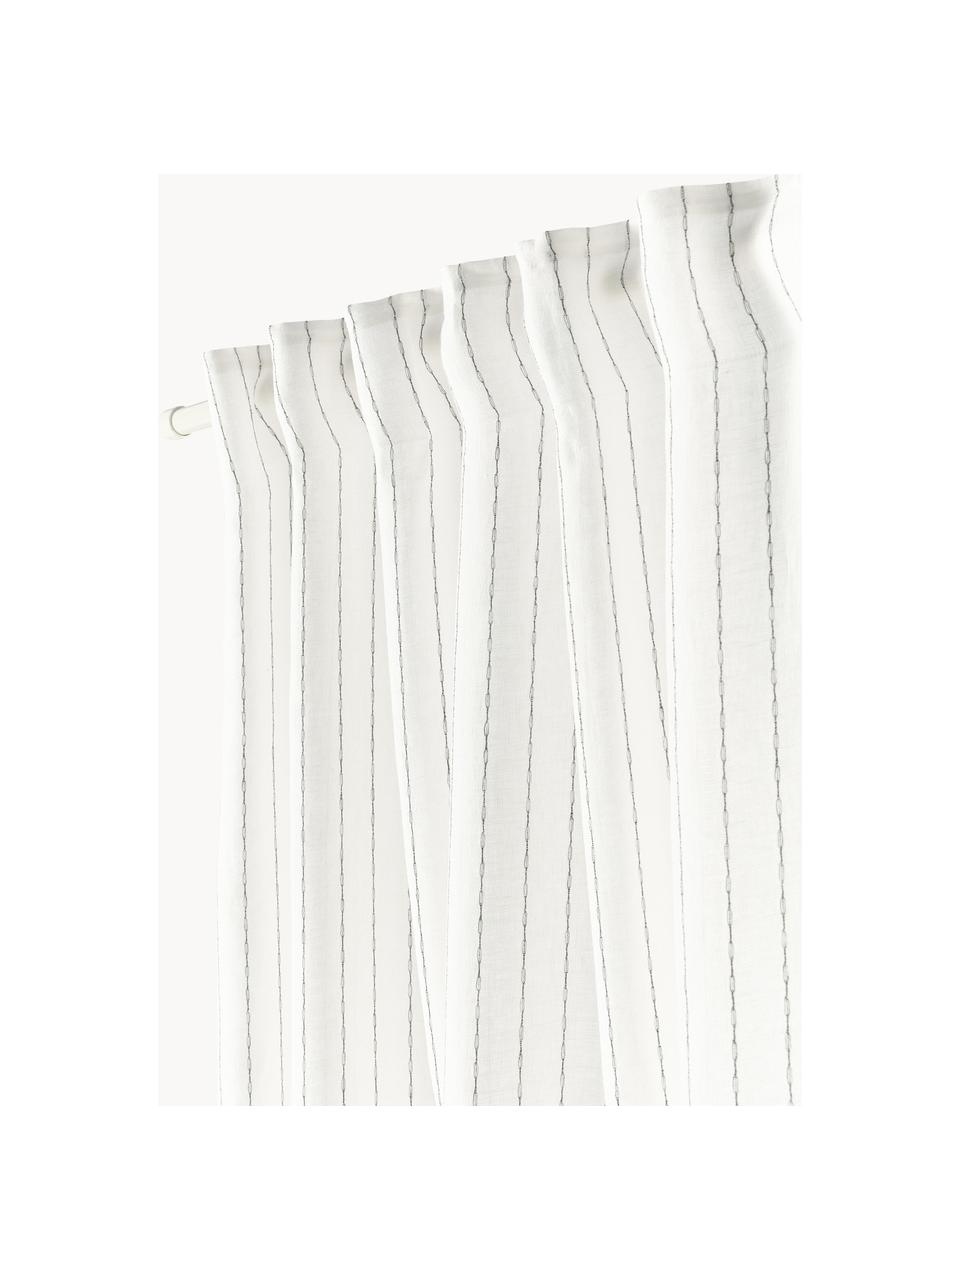 Cortinas semitransparente con multibanda Birch, 2 uds., 100% lino, Off White, An 130 x L 260 cm